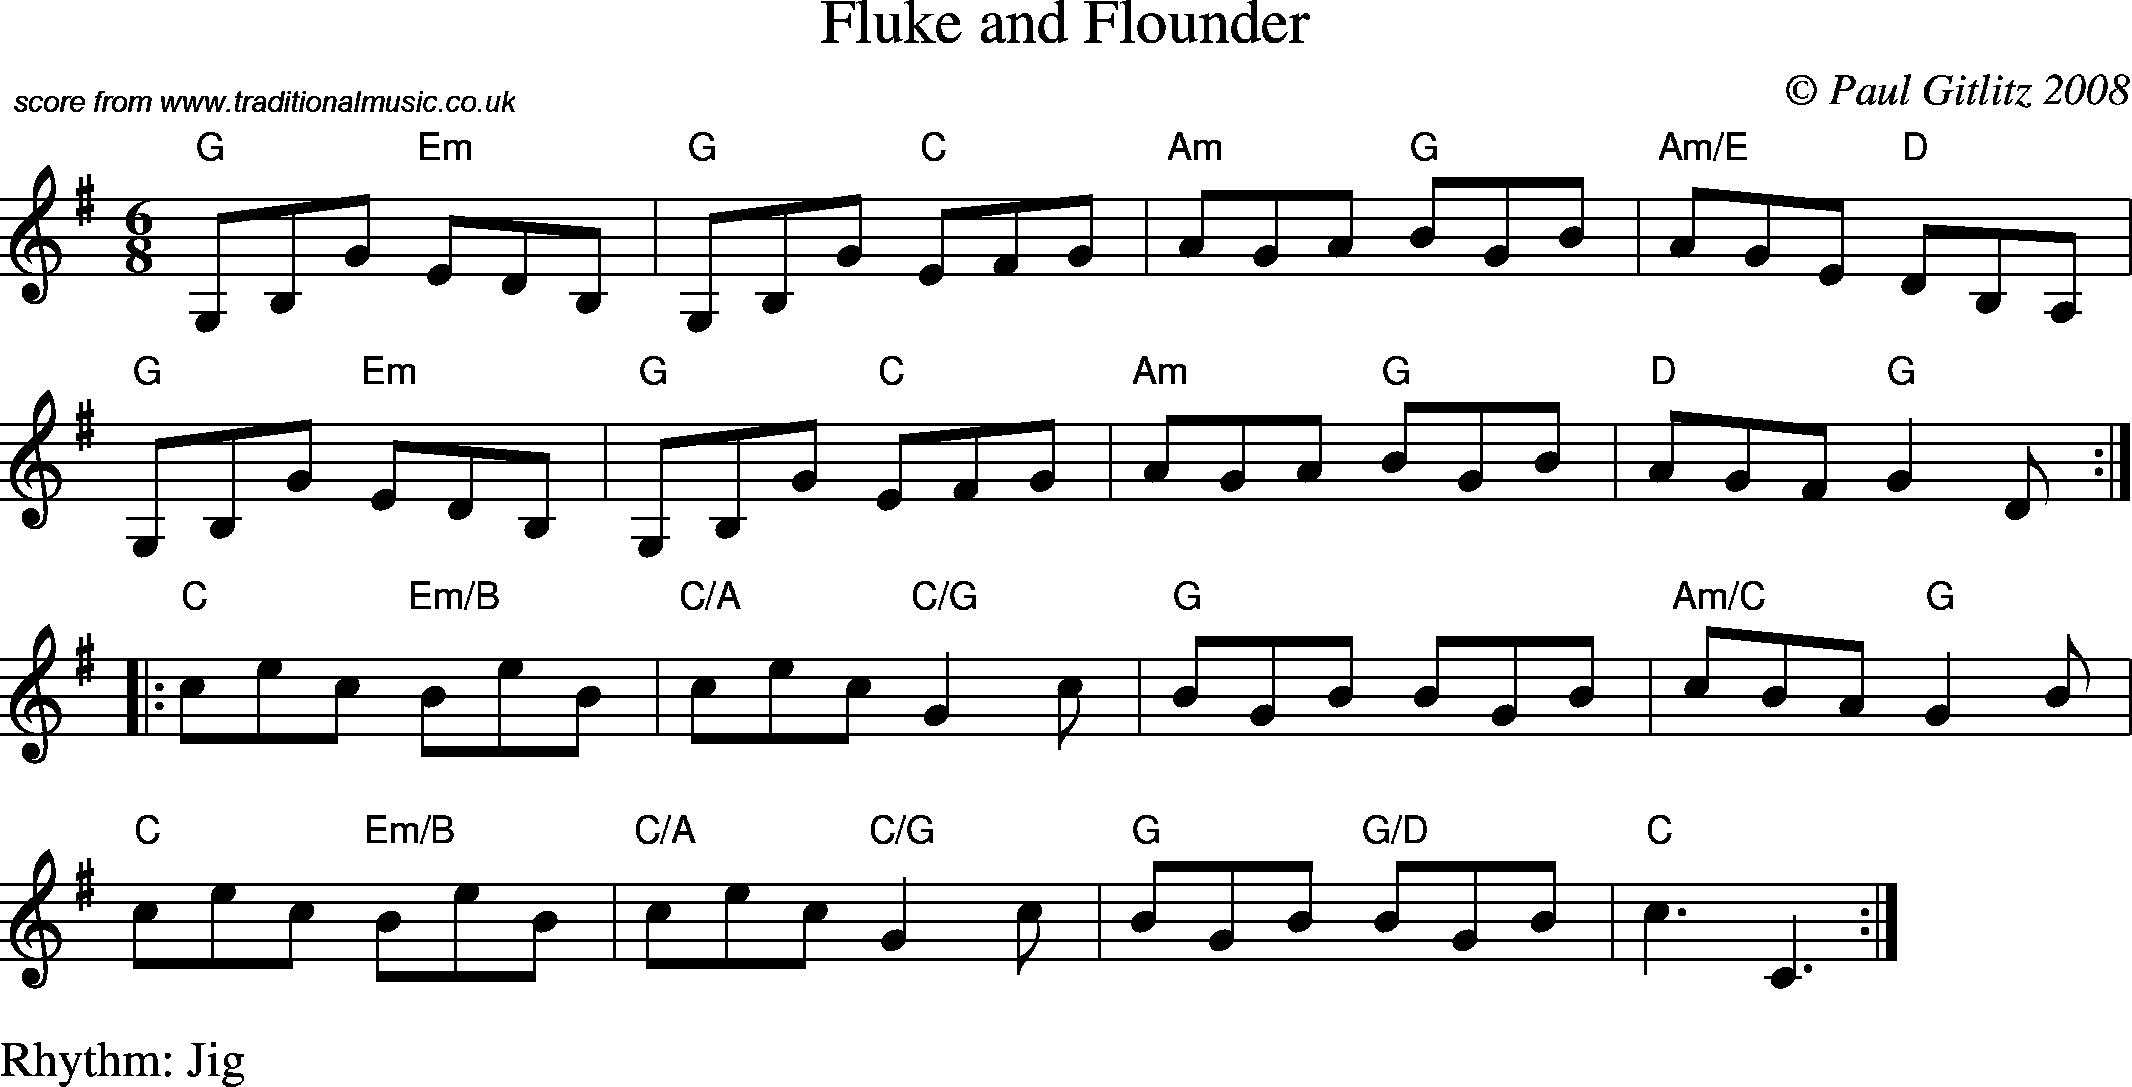 Sheet Music Score for Jig - Fluke and Flounder